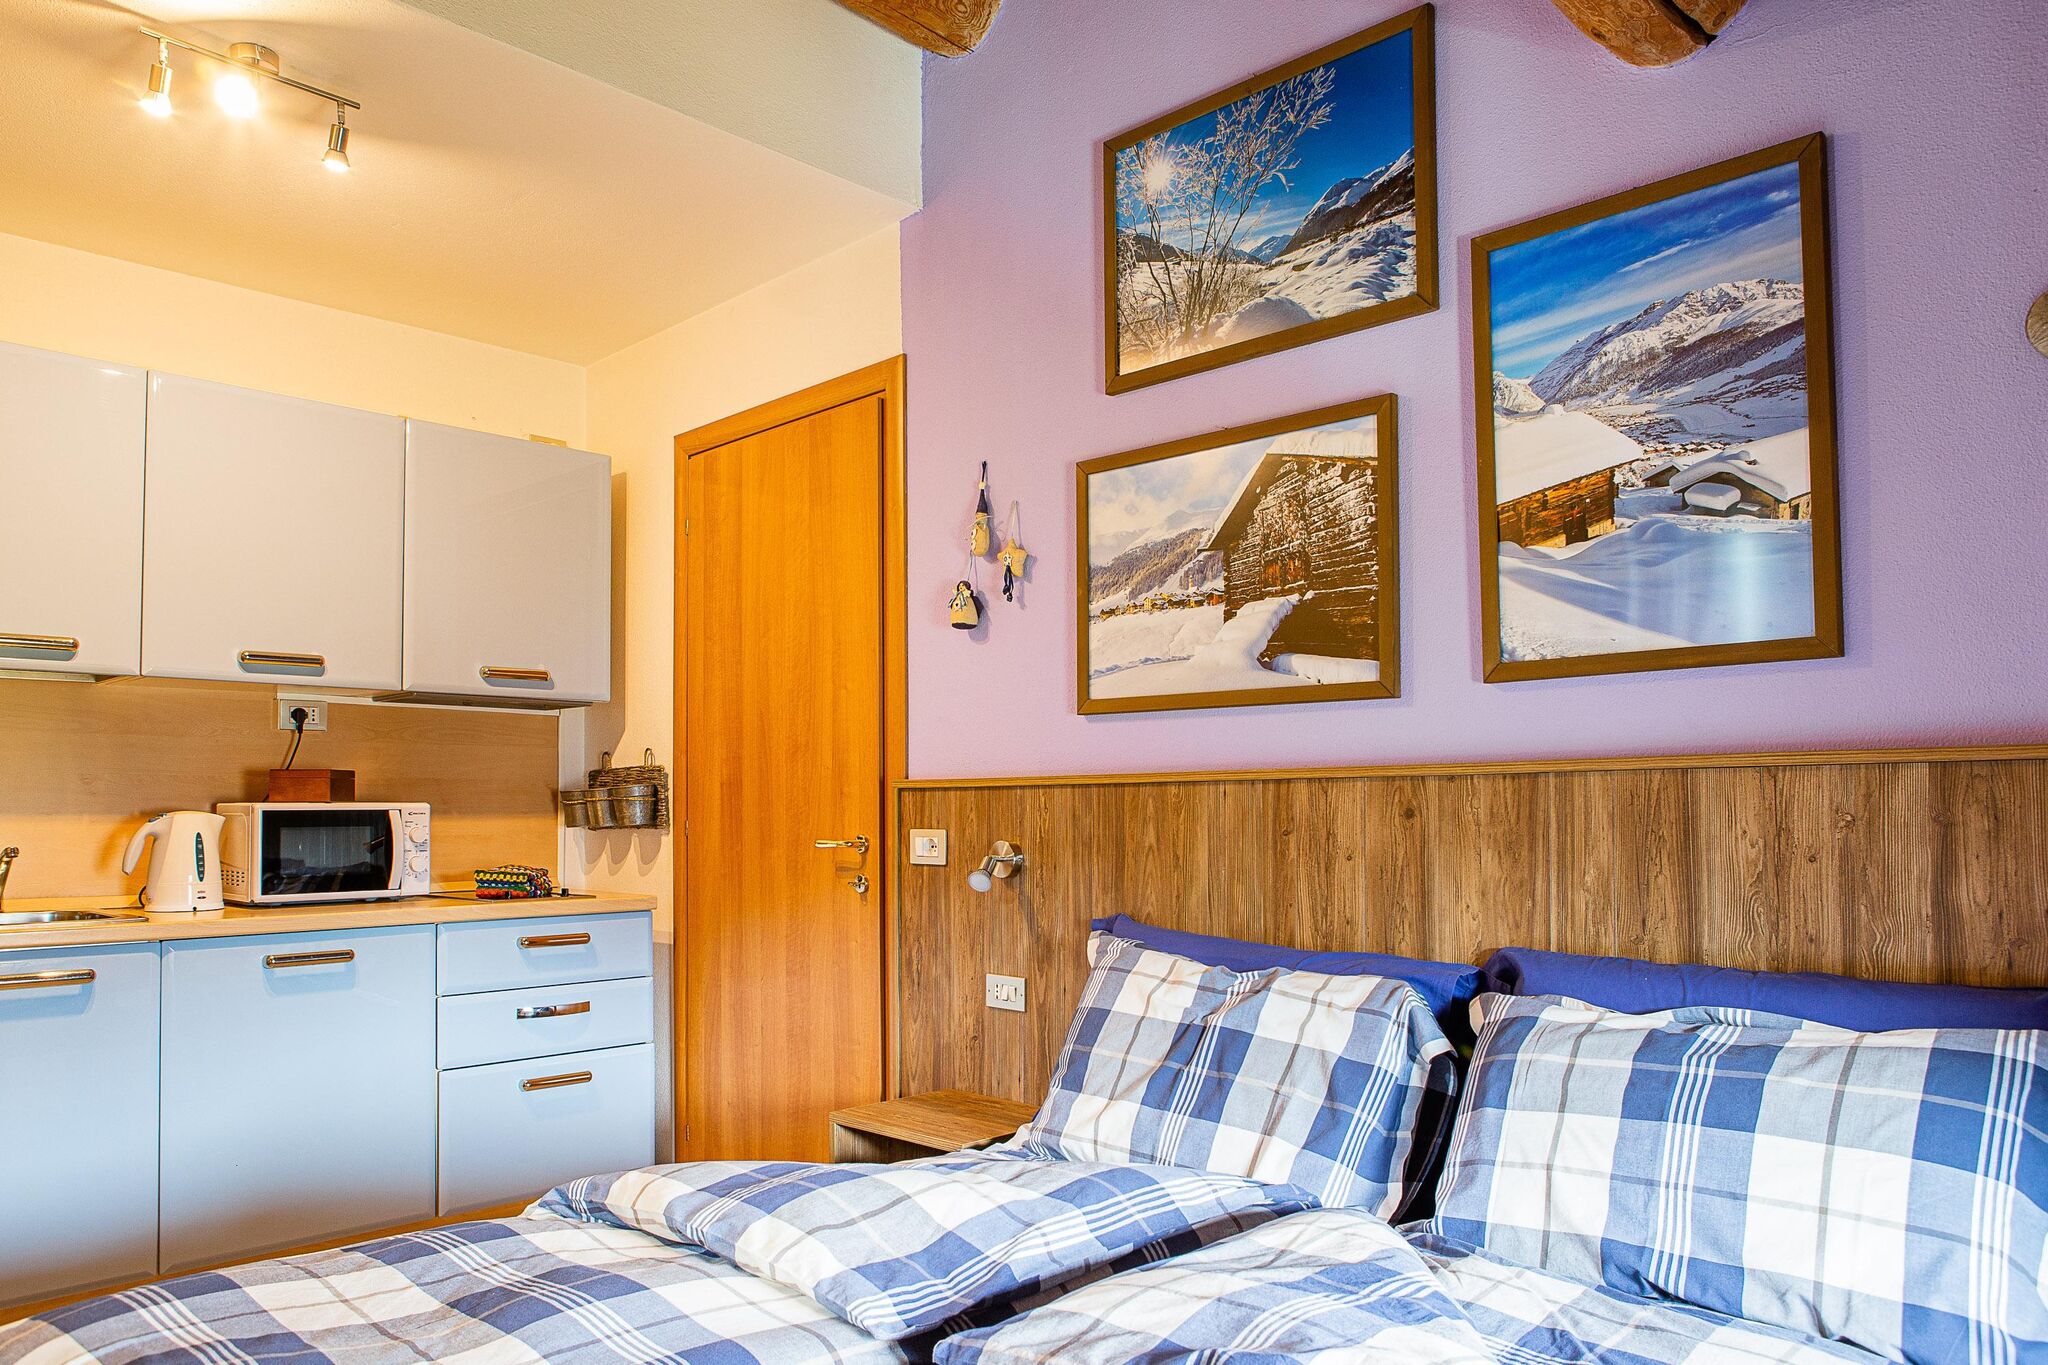 Maison de vacances calme à Livigno en Italie près des pistes